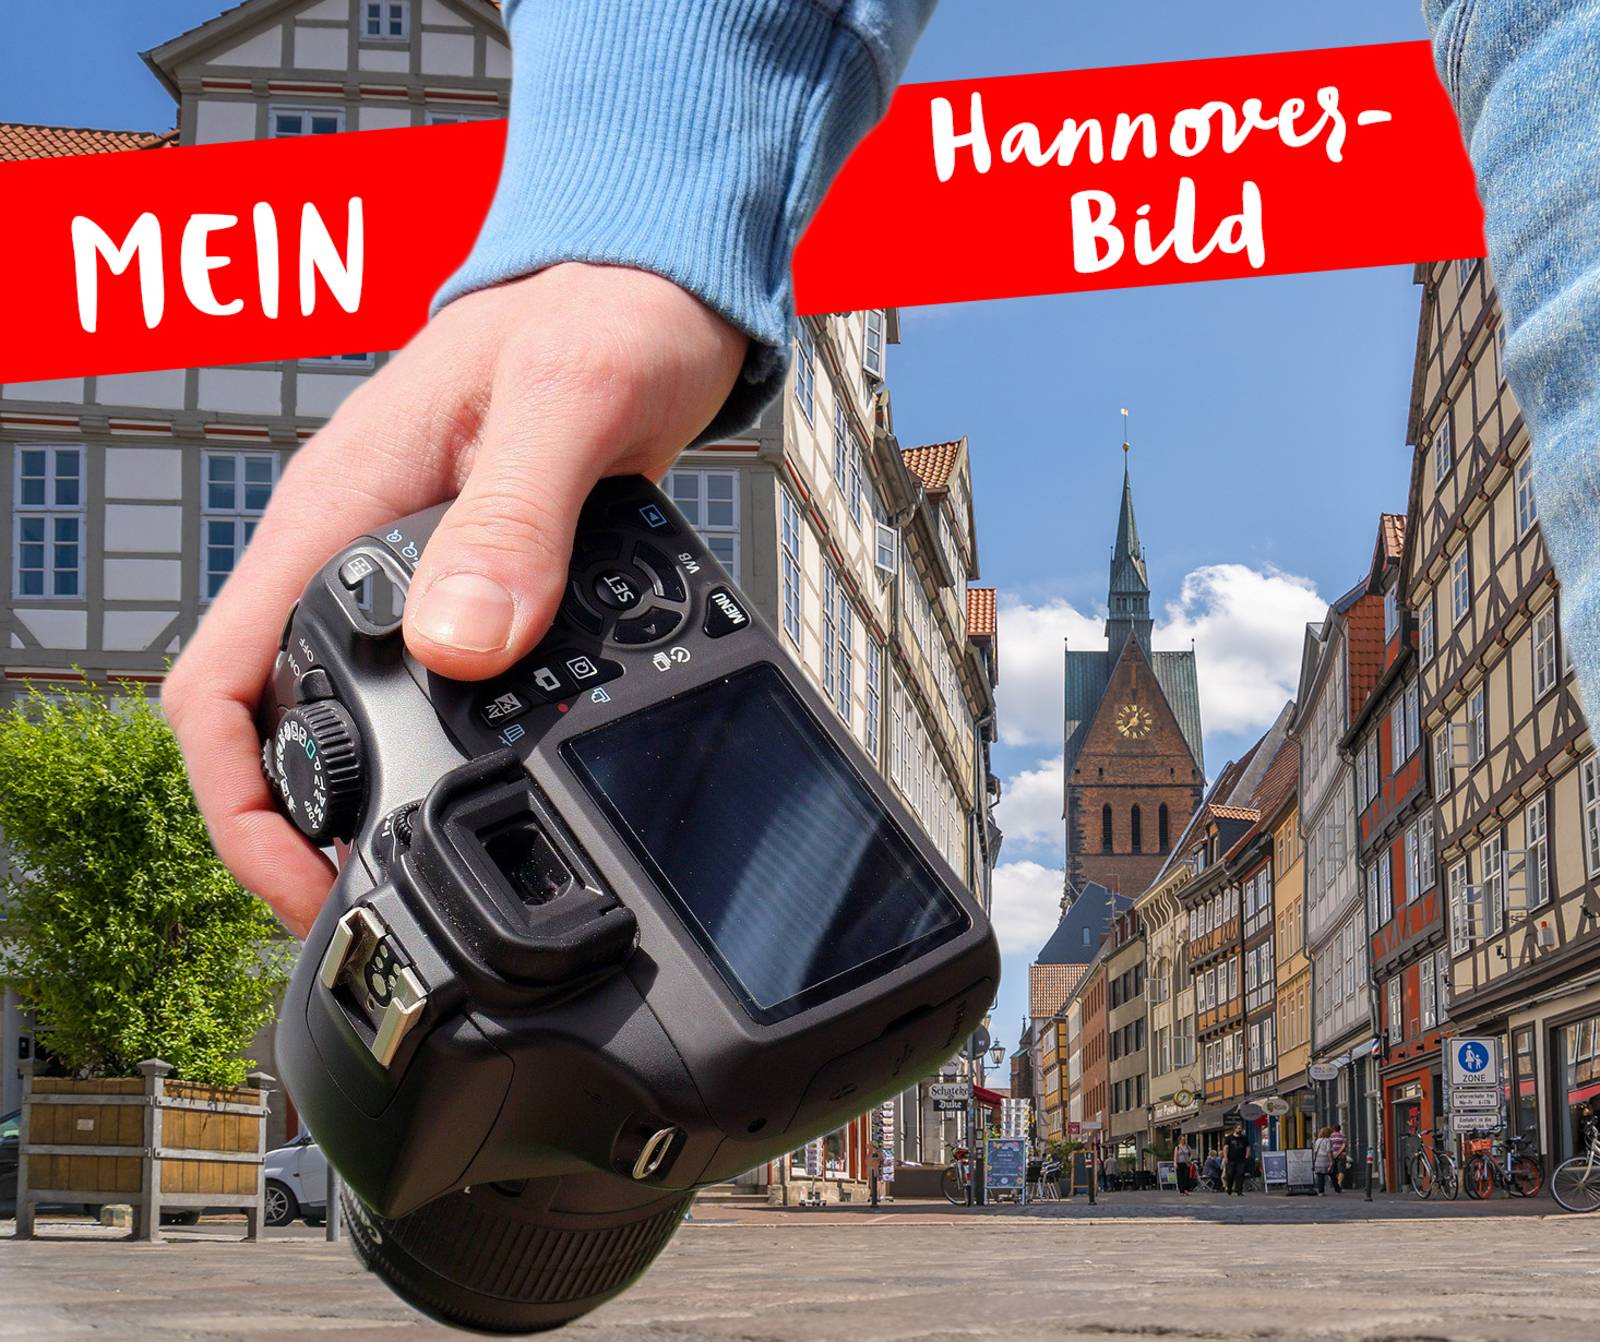 Wir präsentieren eure schönen Hannover Bilder!